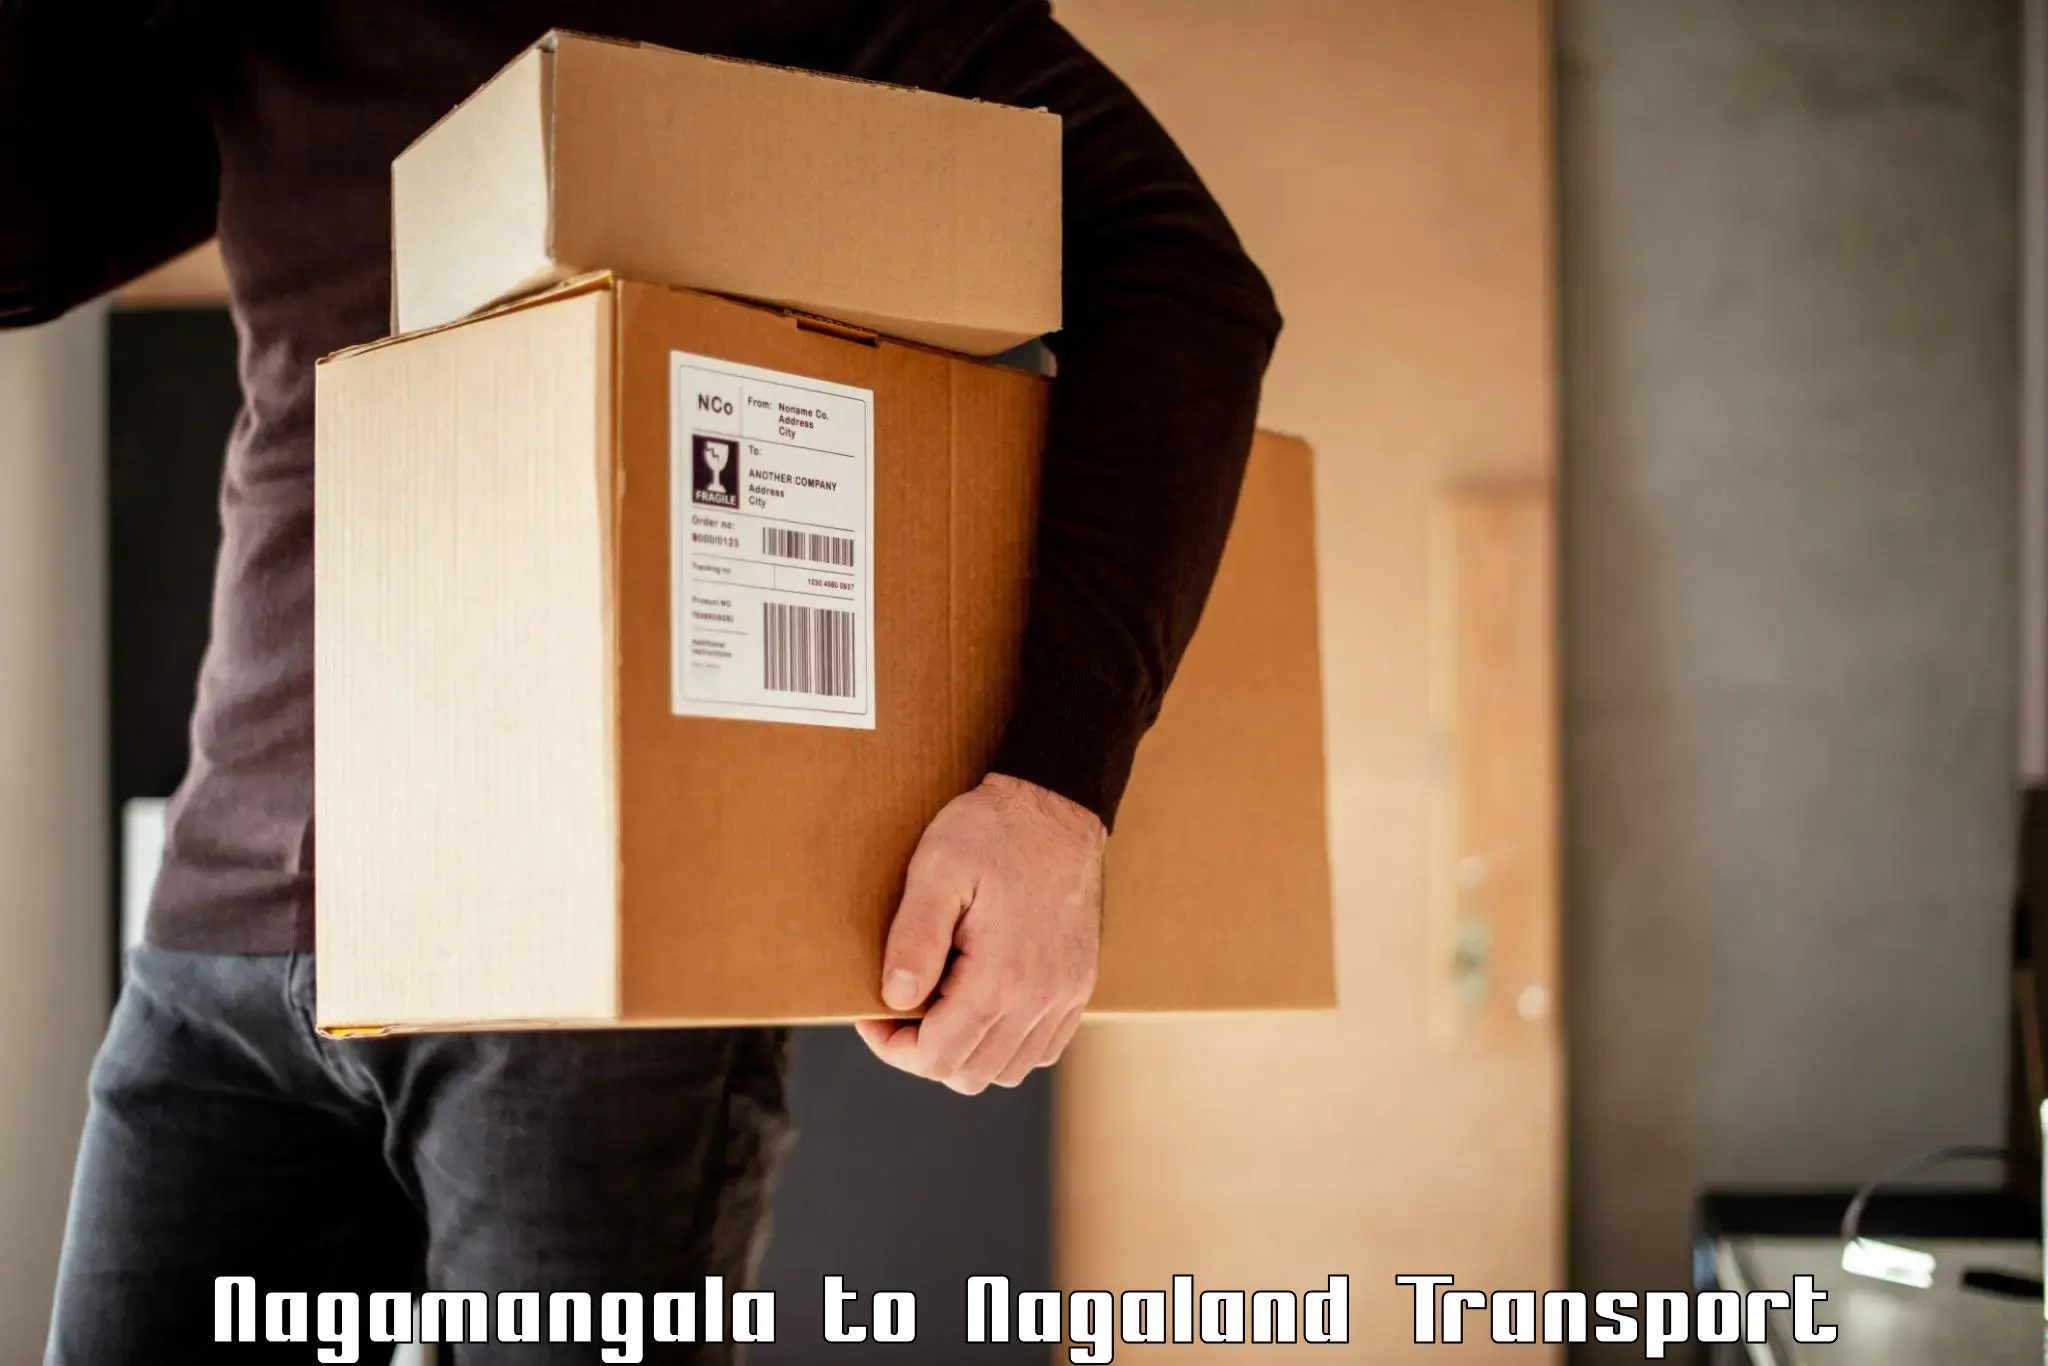 Cargo transport services Nagamangala to Nagaland